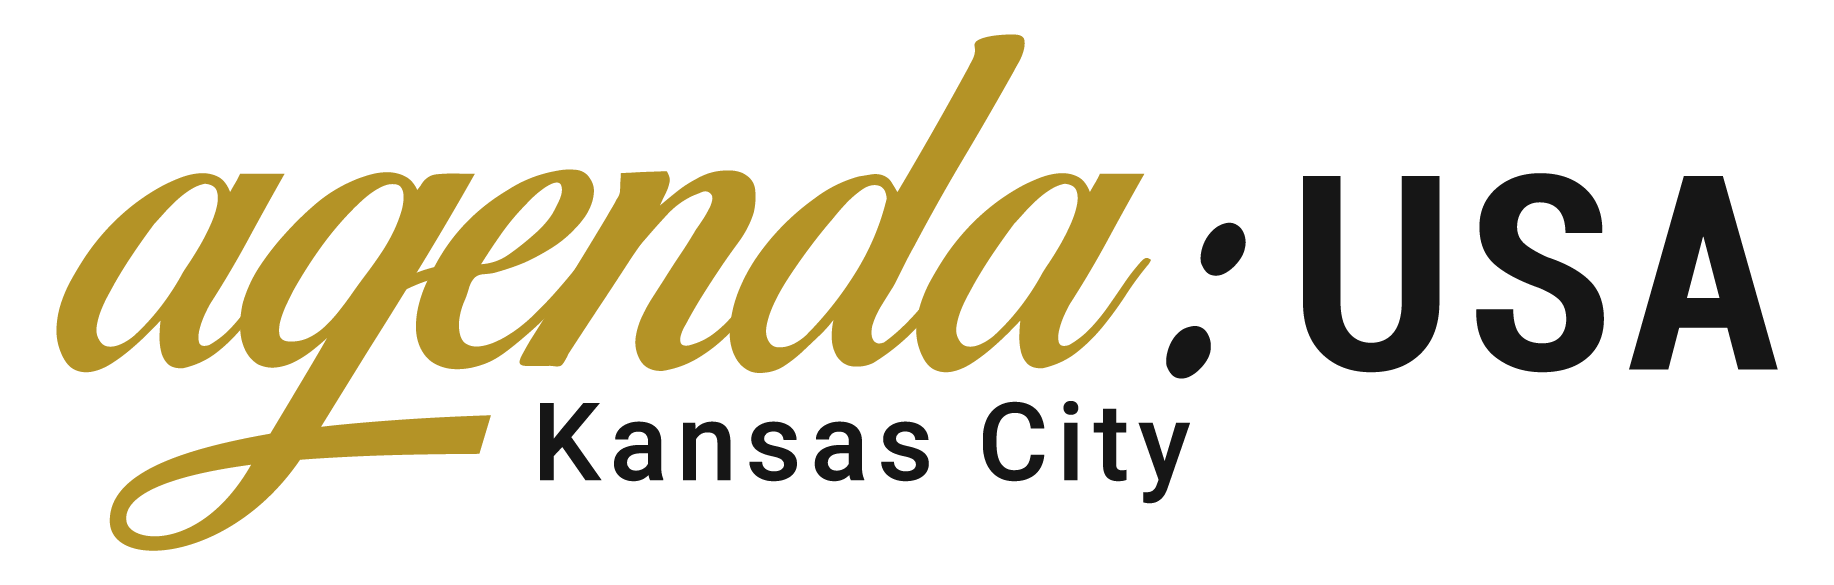 Agenda USA: Kansas City Logo